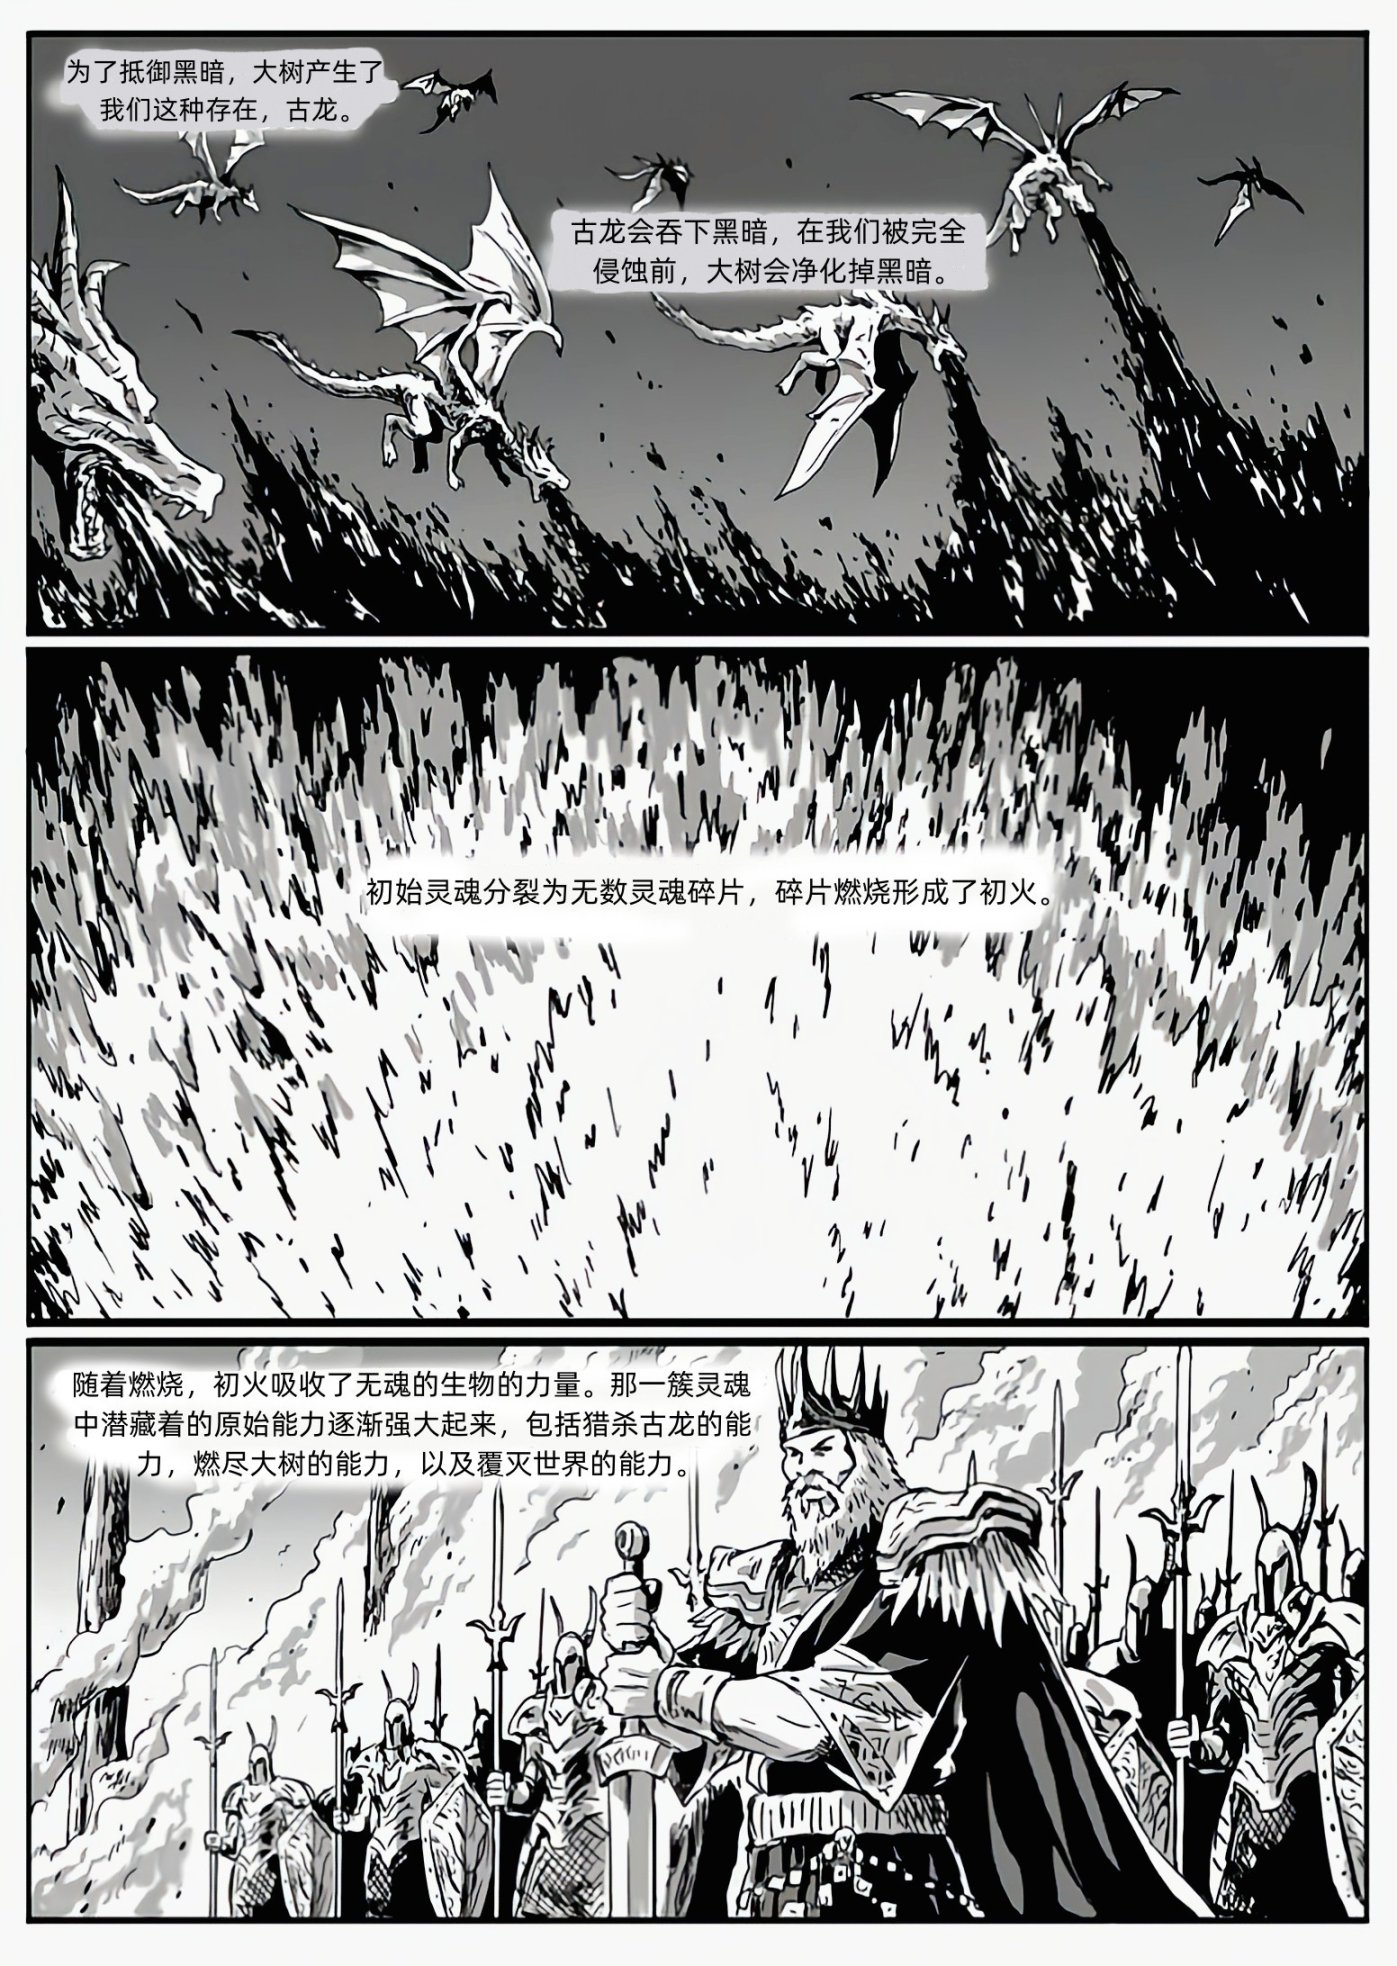 【黑暗靈魂系列】黑暗靈魂：獵龍戰爭（C15深淵-C16安眠公主與無名王者）-第4張